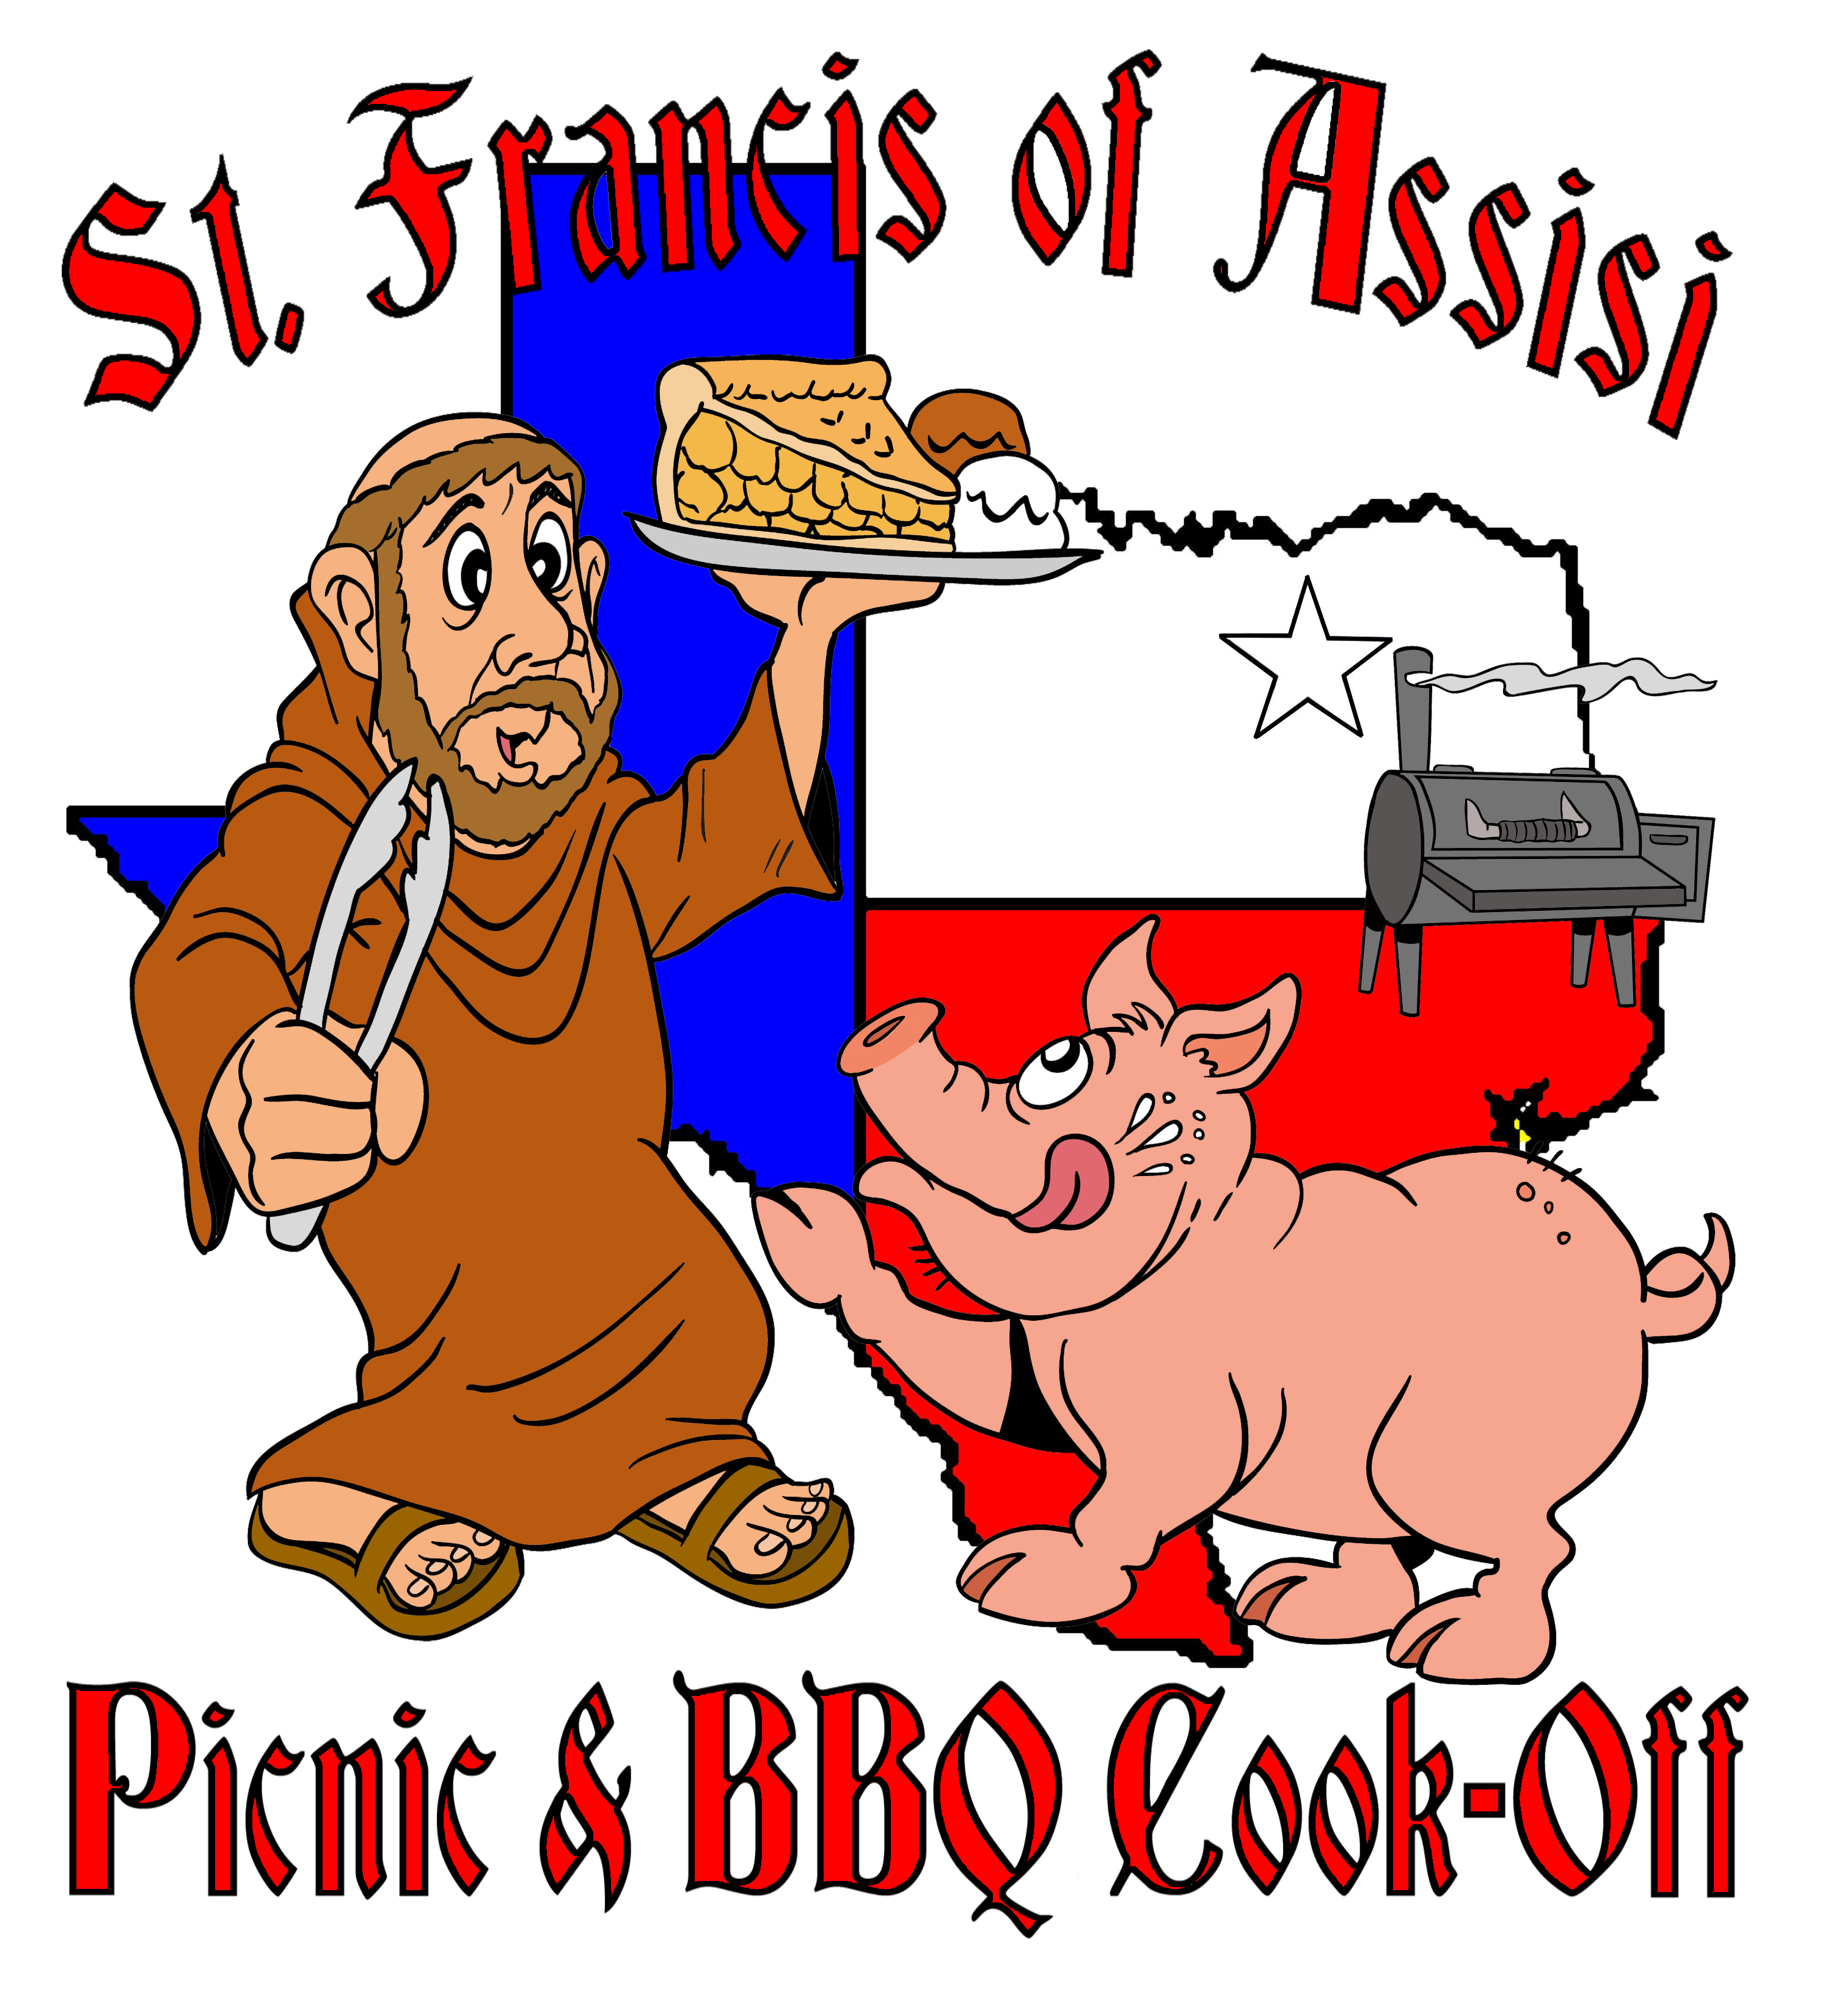 Parish picnic bbq cook. Community clipart parishioner